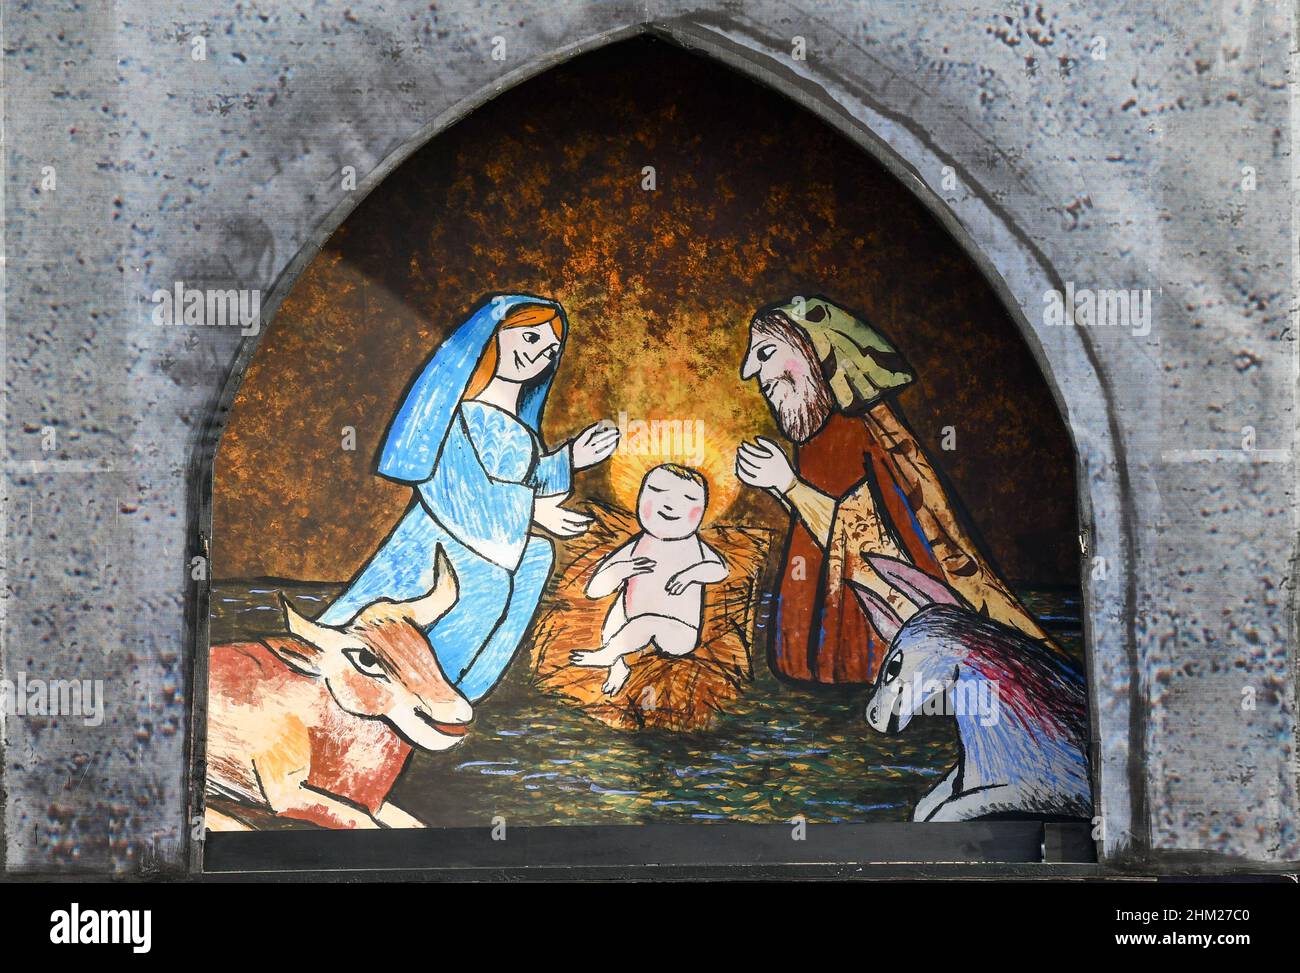 Dettaglio del presepio del Calendario di Avvento di Emanuele Luzzati in Piazza Vittorio Veneto durante le festività natalizie, Torino, Piemonte Foto Stock